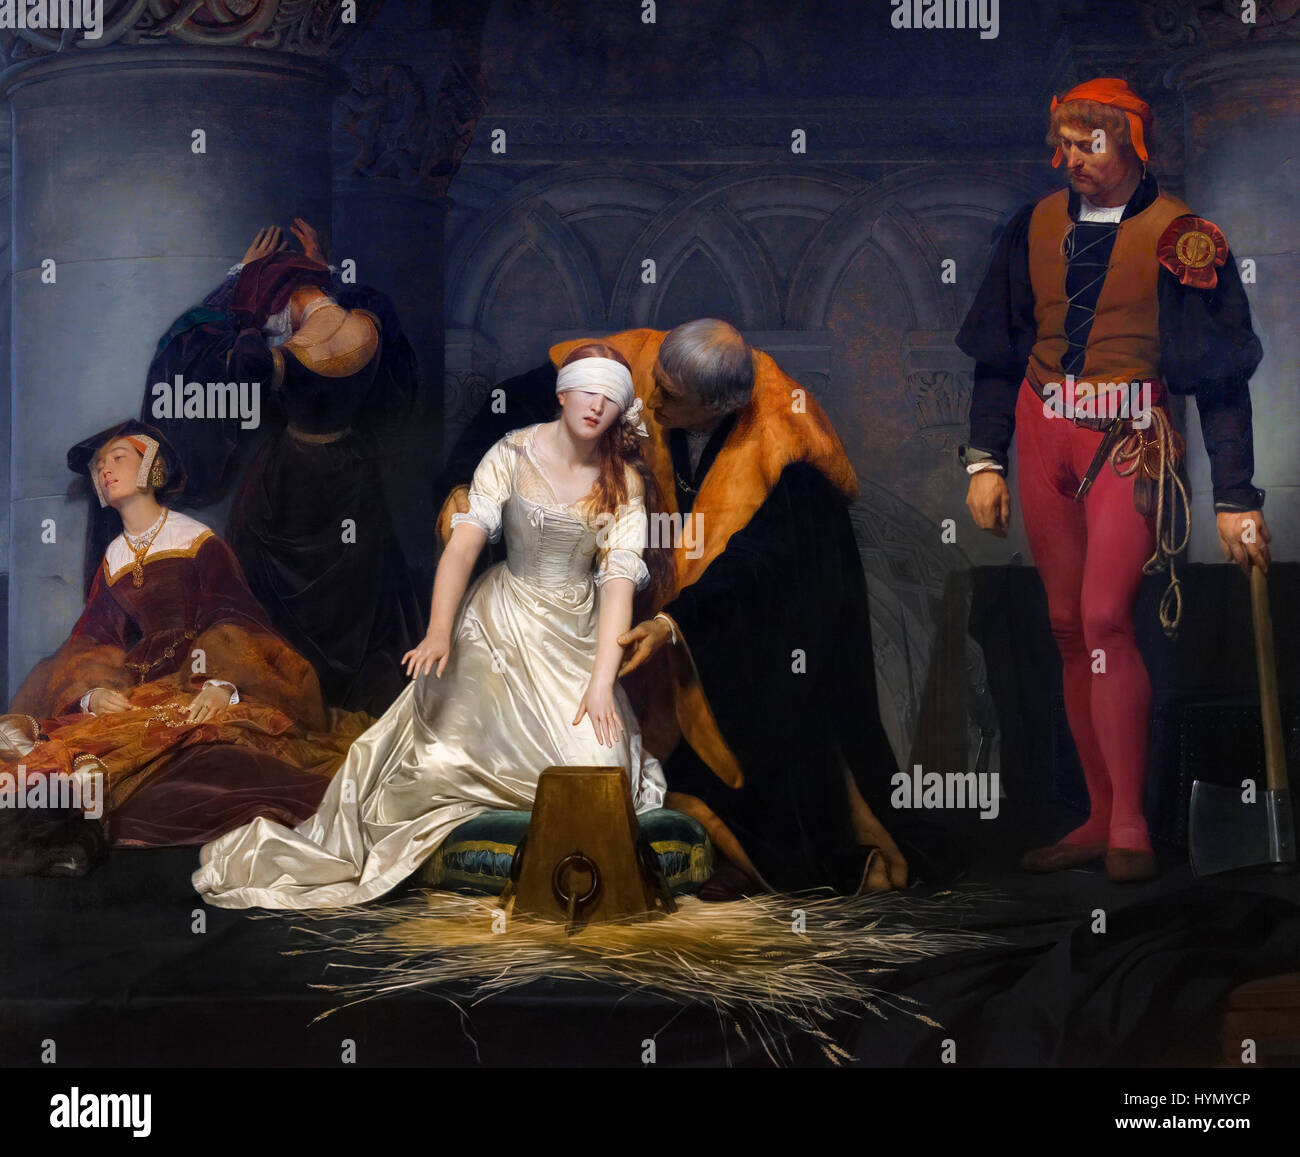 Die Hinrichtung der Lady Jane Grey von Paul Delaroche (1795-1856), Öl auf Leinwand, 1833. Lady Jane Grey regierte als Königin von England für 9 Tage im Jahre 1553. Stockfoto